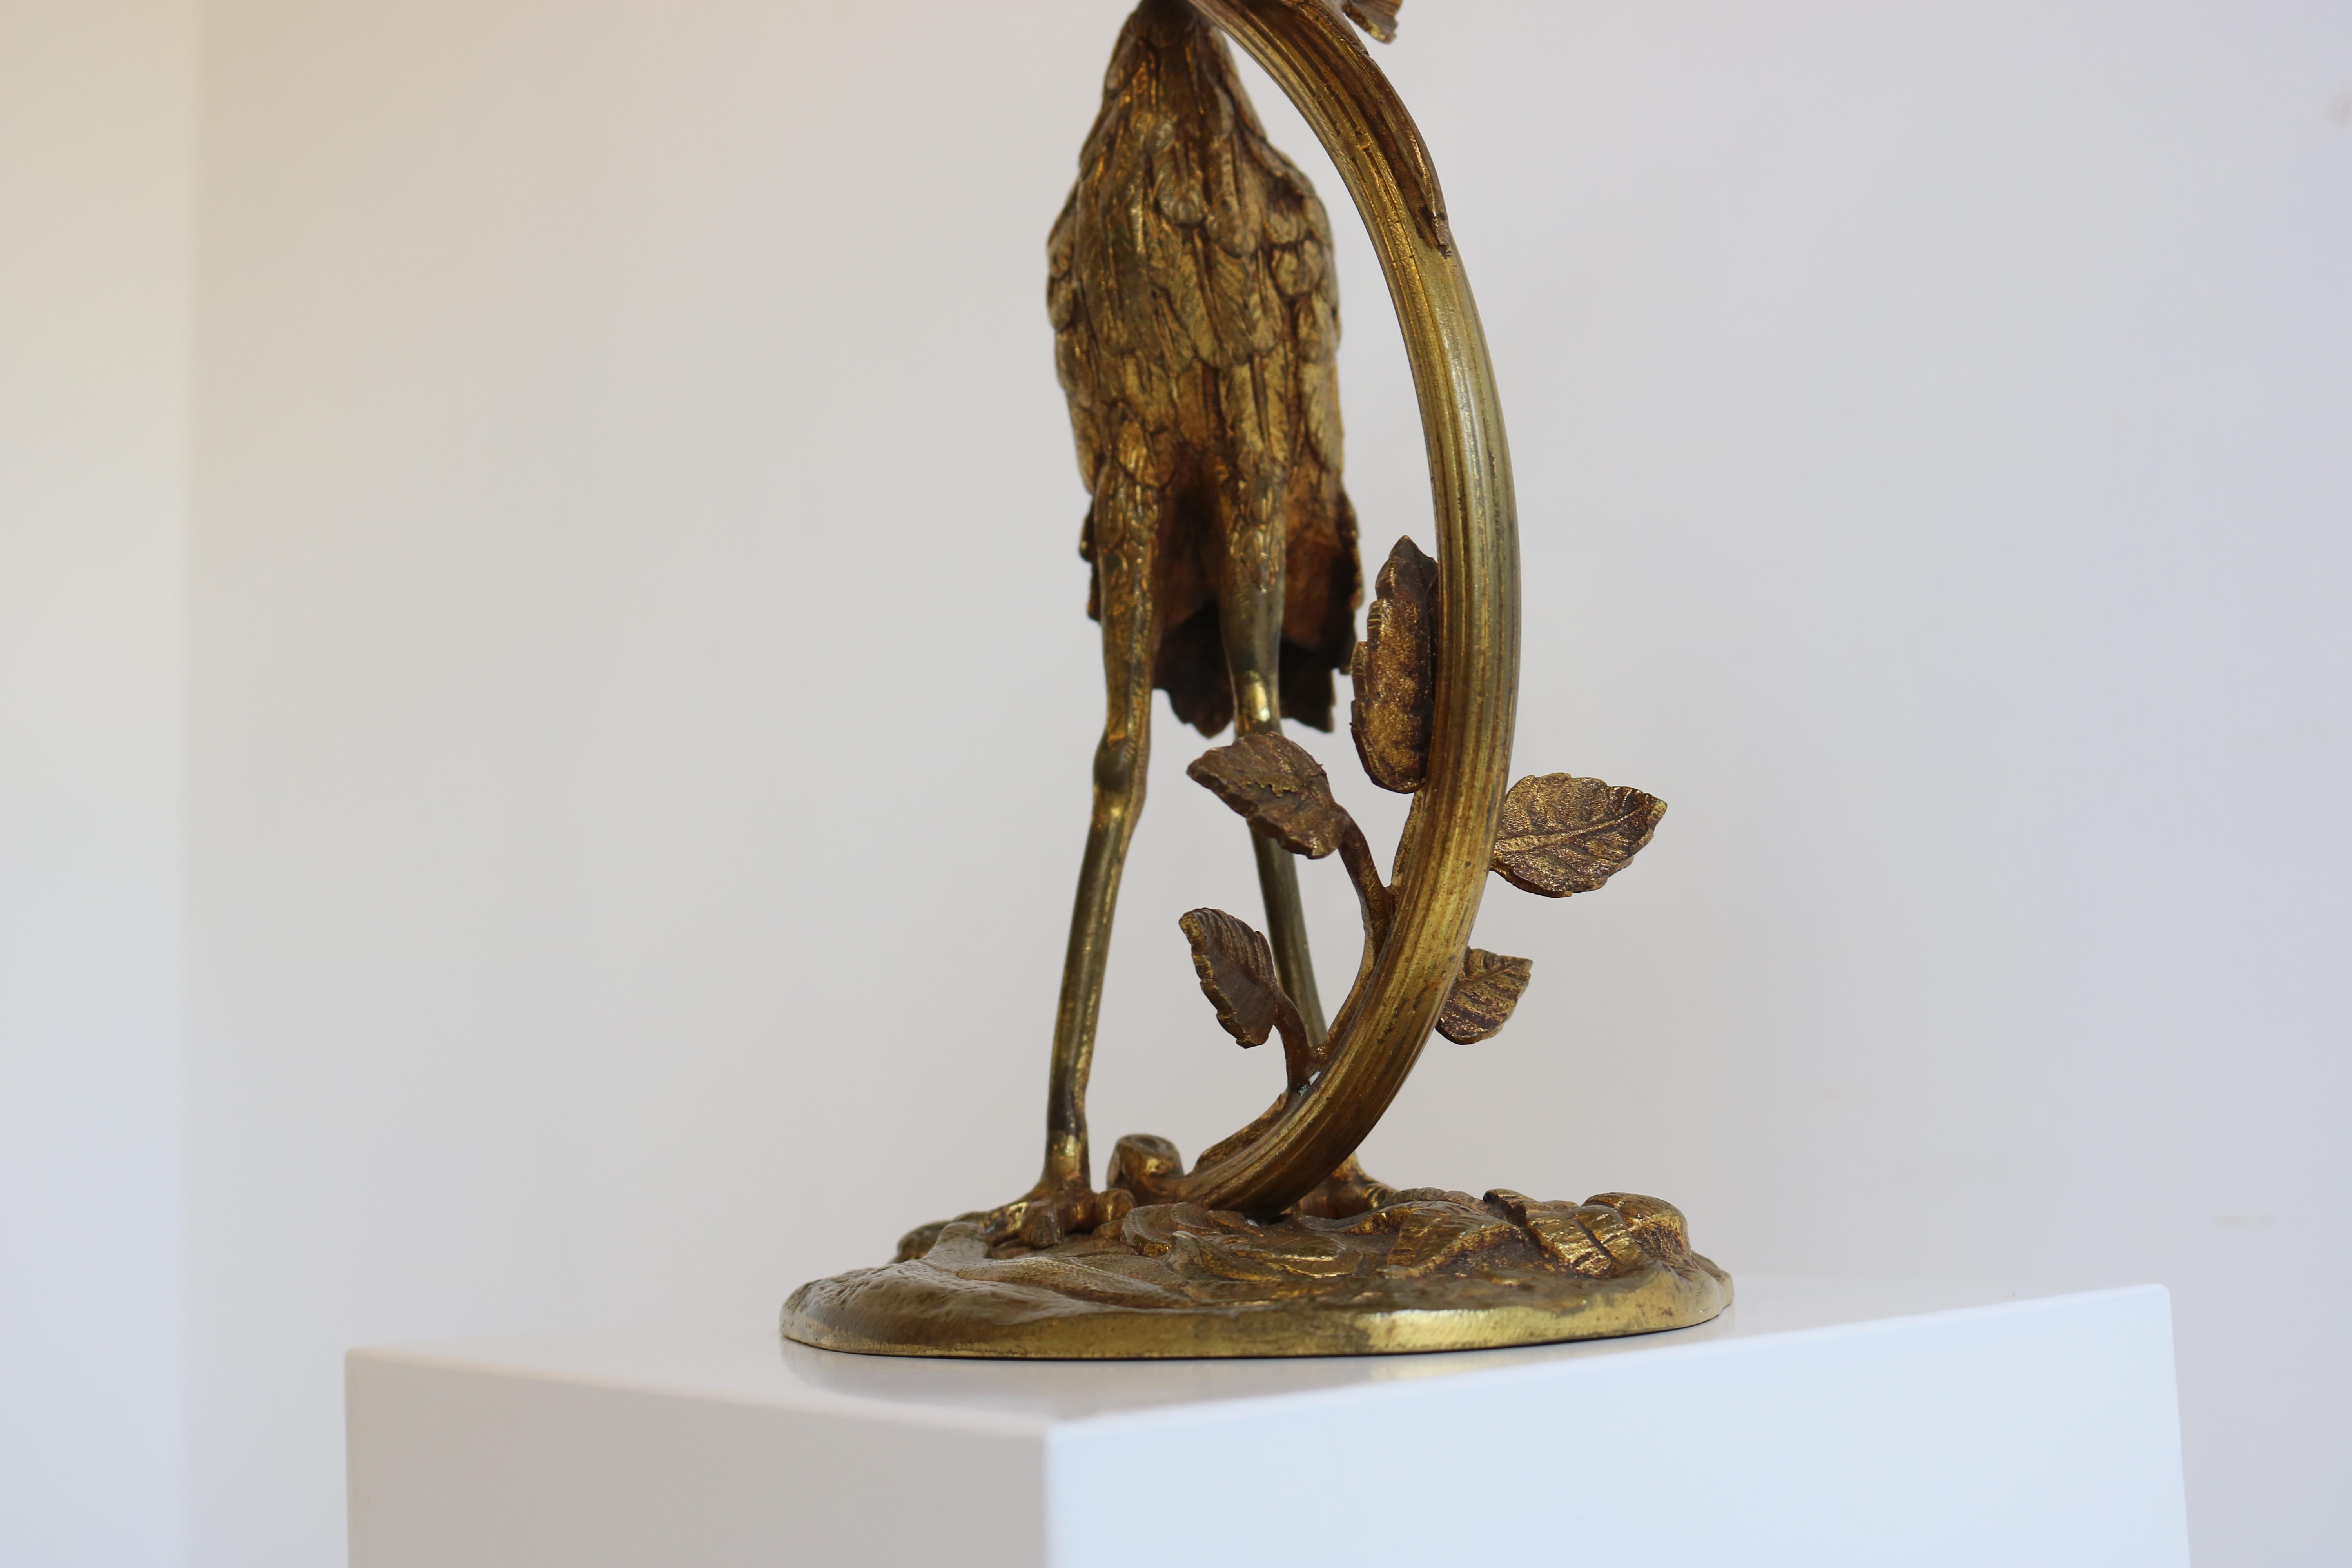 Antique French Art Nouveau Table Lamp Heron by Degue 1920 Pate De Verre Bronze  For Sale 6